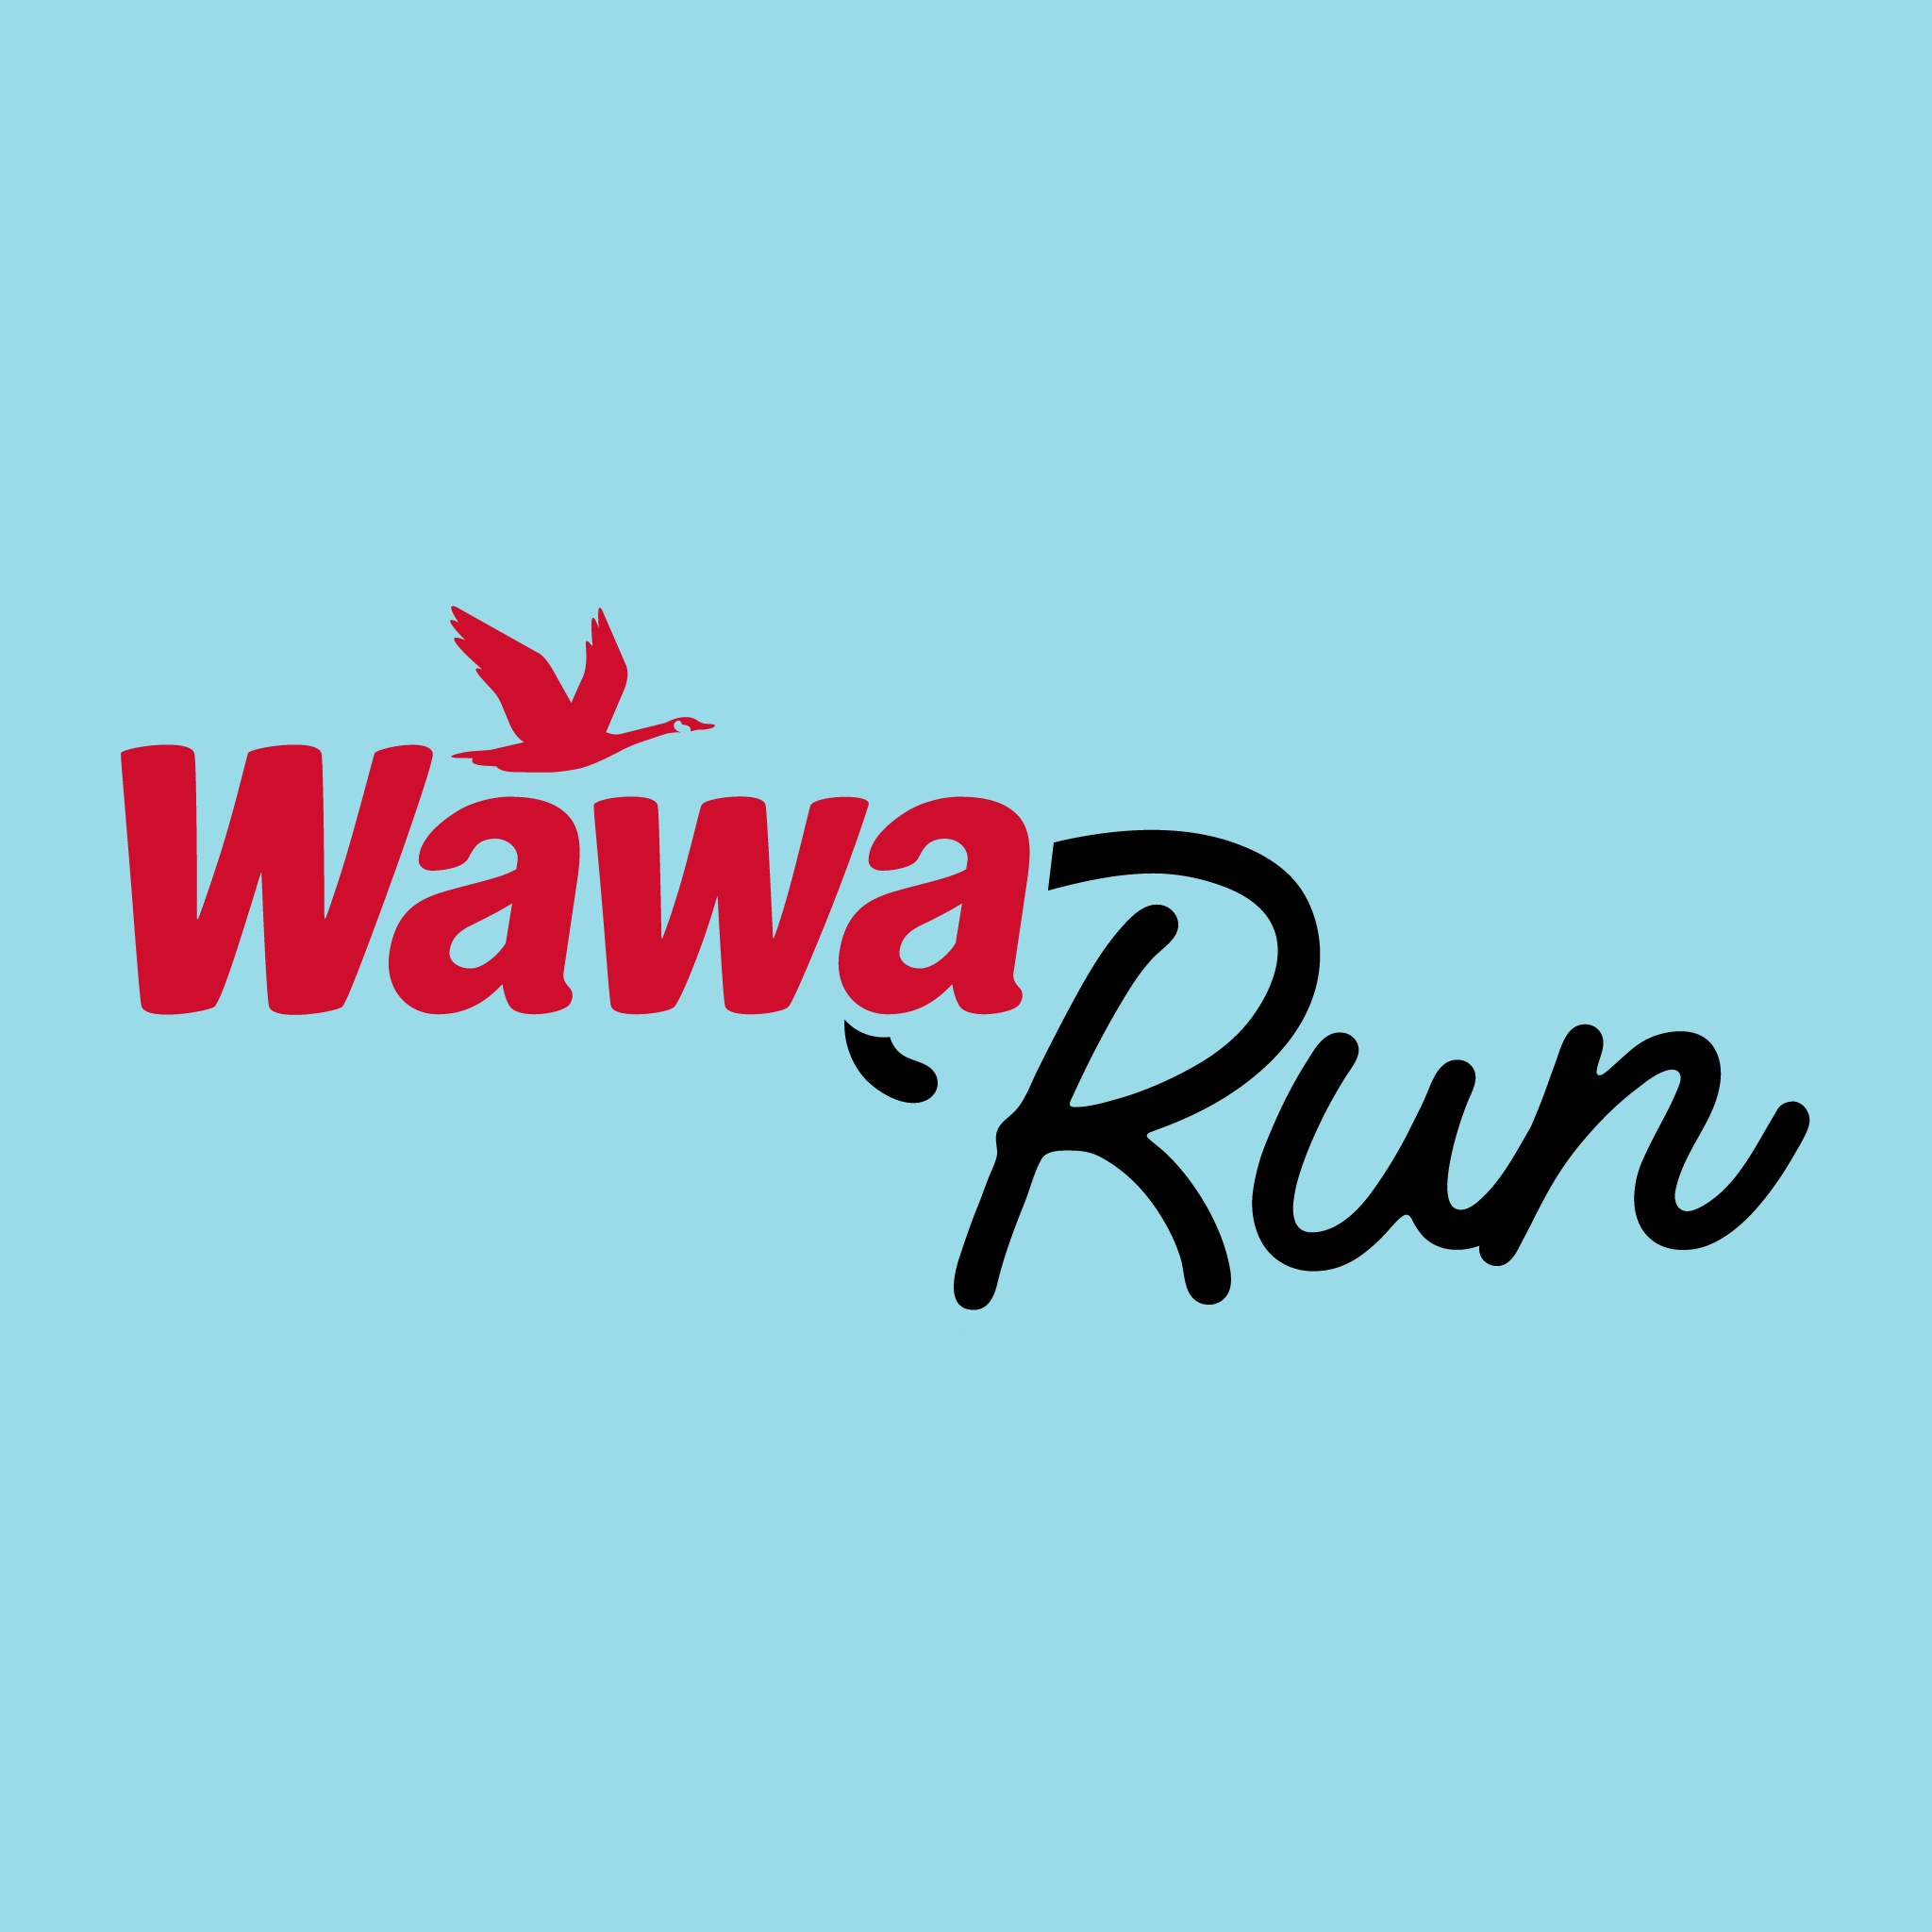 Business logo of Wawa